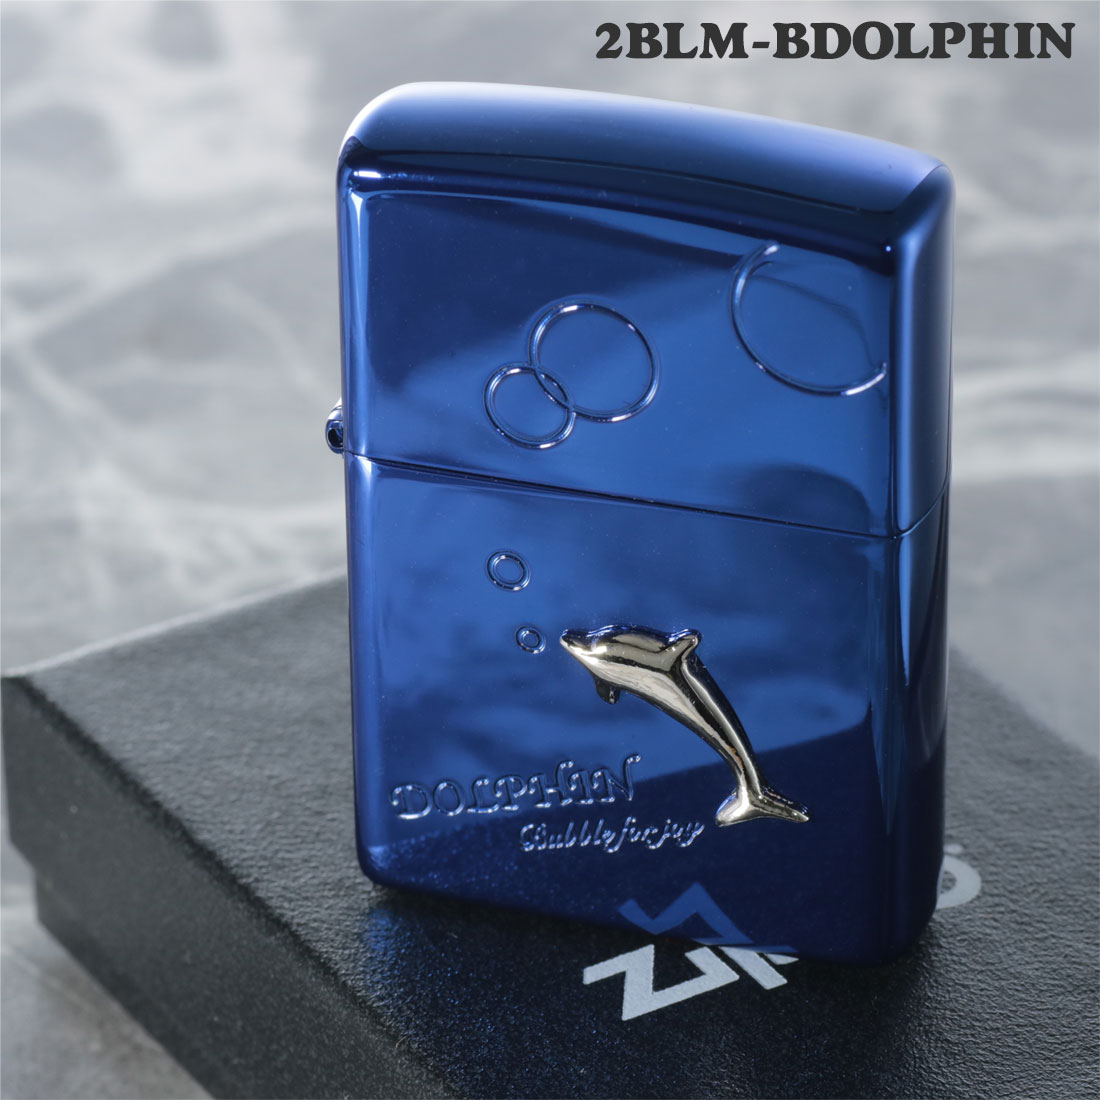 ZIPPO(ジッポーライター) ドルフィン メタル貼り バブル ブルーイオンコーティング エッチング 2BLM-BDOLPHIN おしゃれ かっこいい  かわいい メンズ レディース ギフト プレゼント 送料無料 zippo 【ネコポス可】 | ジャッカル